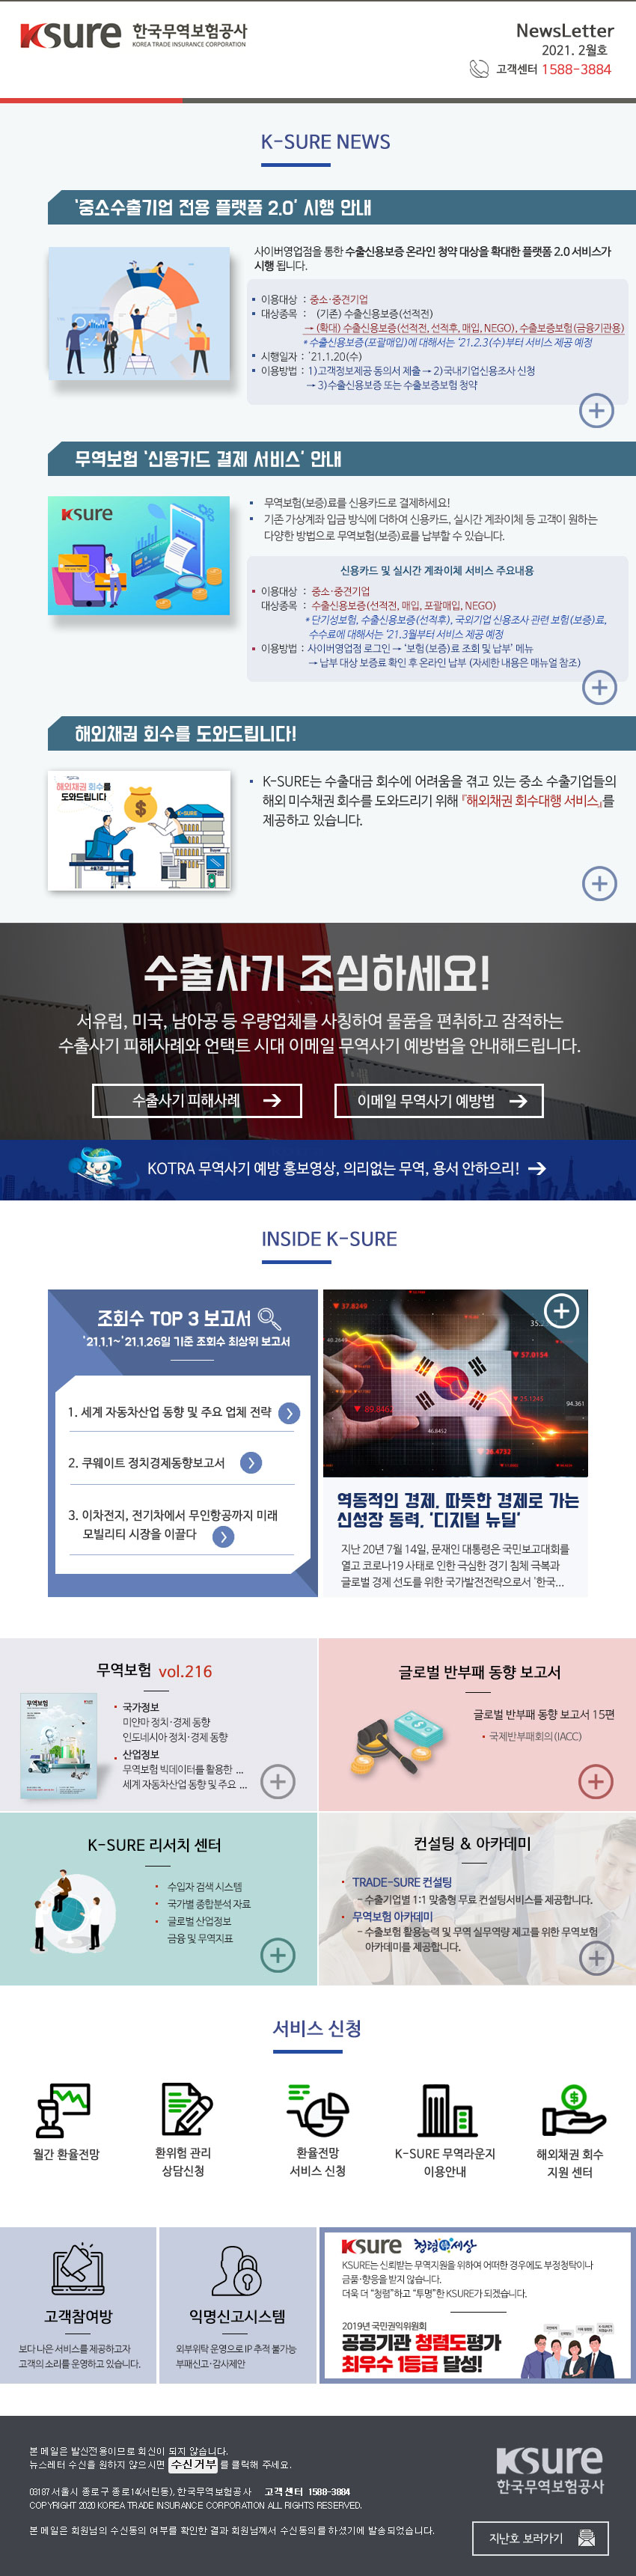 한국무역보험공사에서 보내드리는 2021년 2월 뉴스레터입니다.